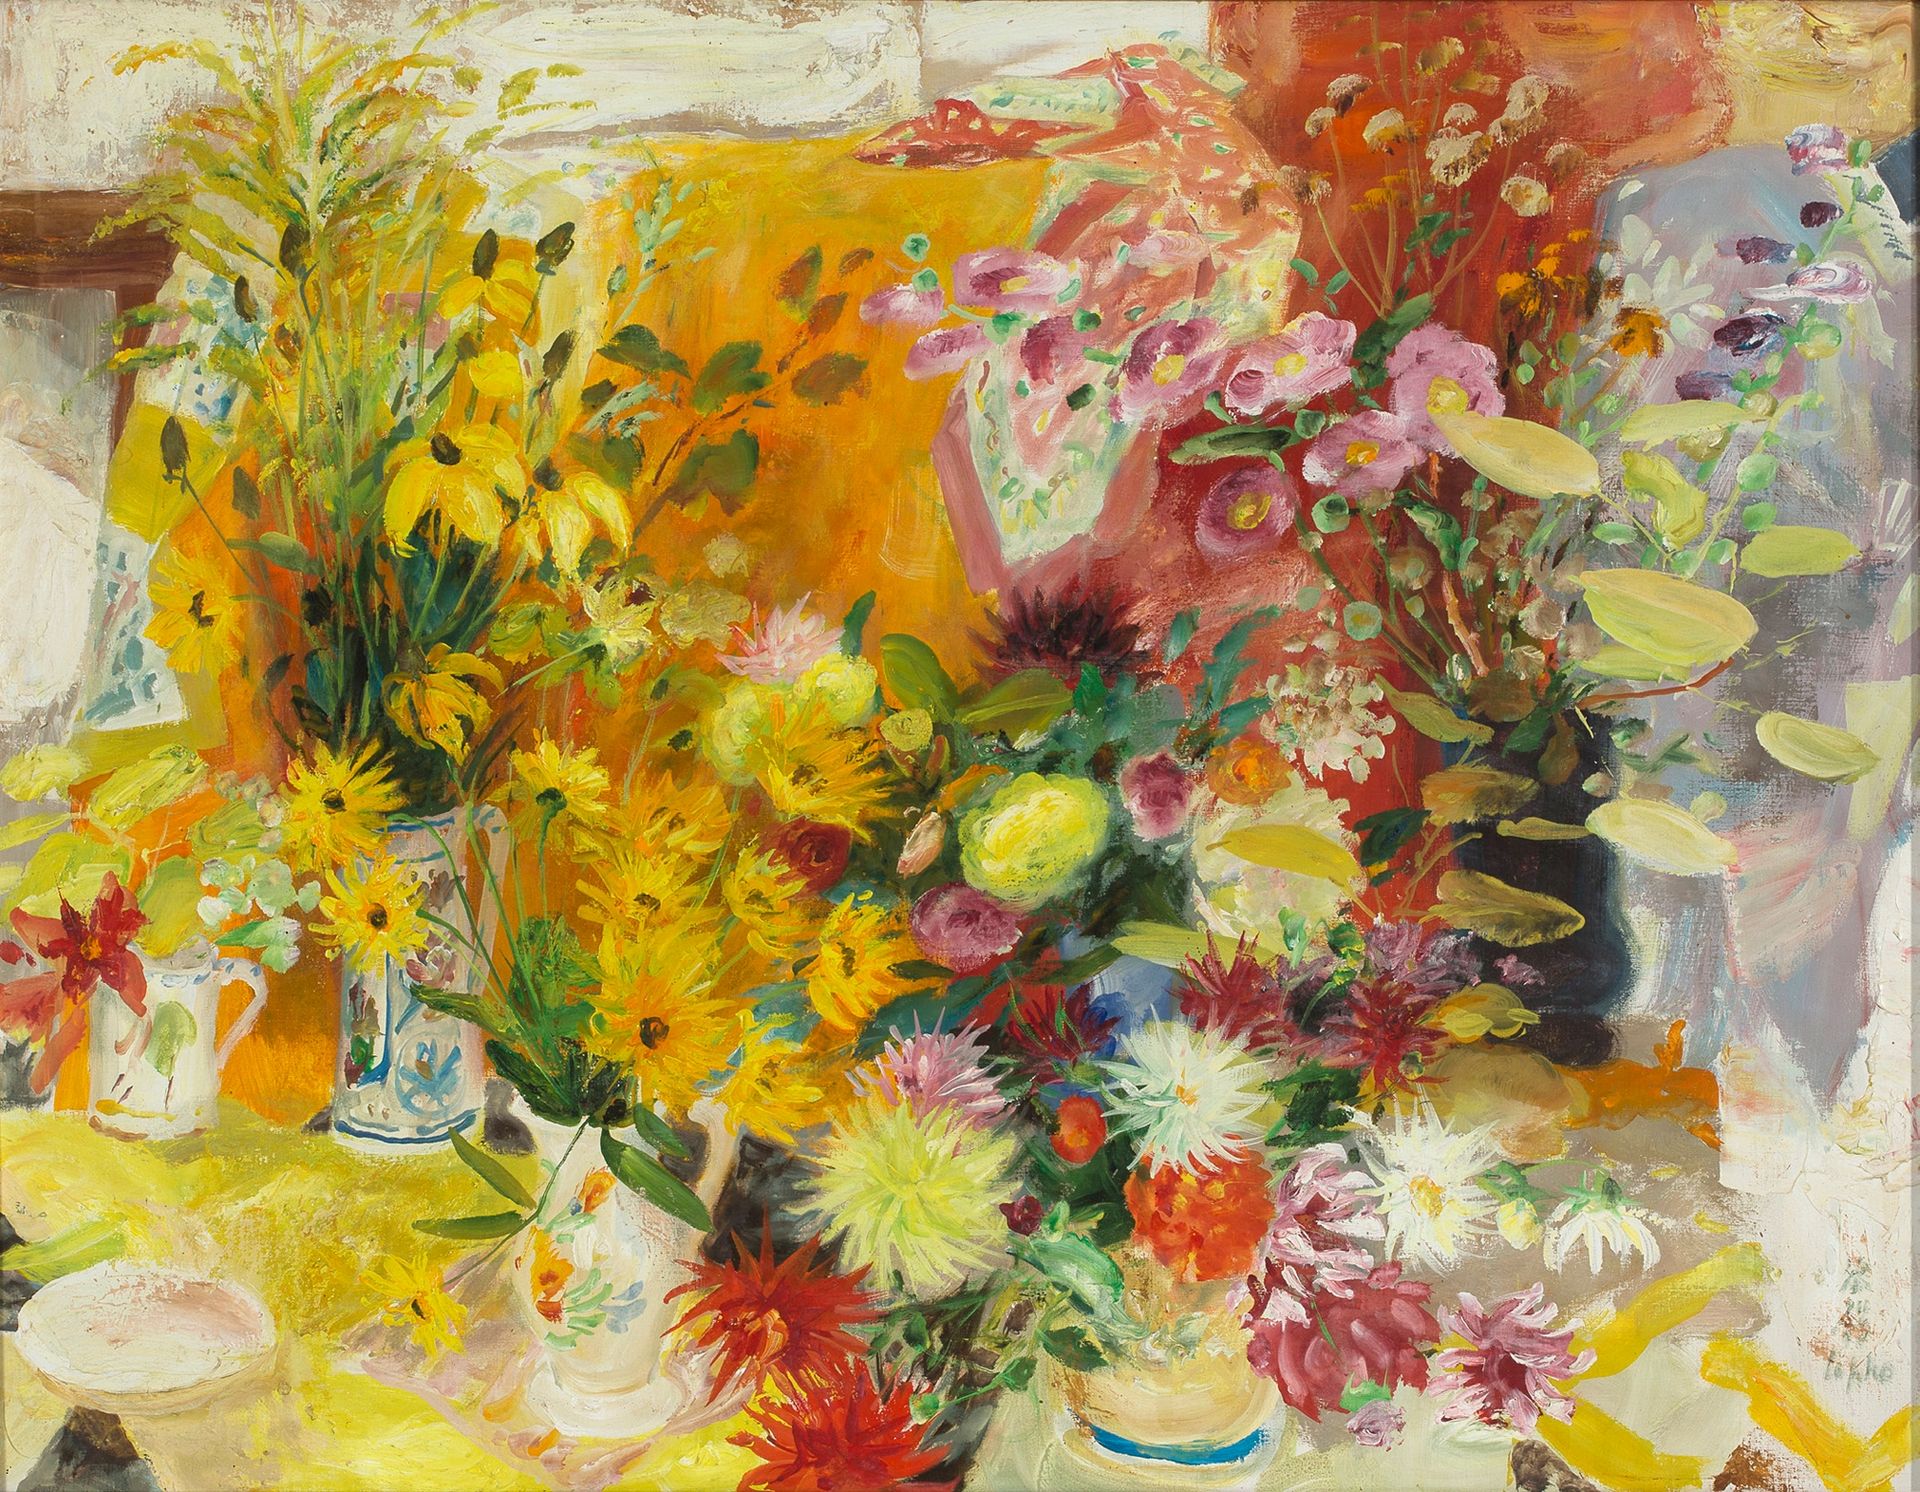 Le Pho (1907-2001) 
有六束花的构图，约1960-1970年

布面油画，右下角有签名

90 x 116 cm - 35 3/8 x 45 &hellip;